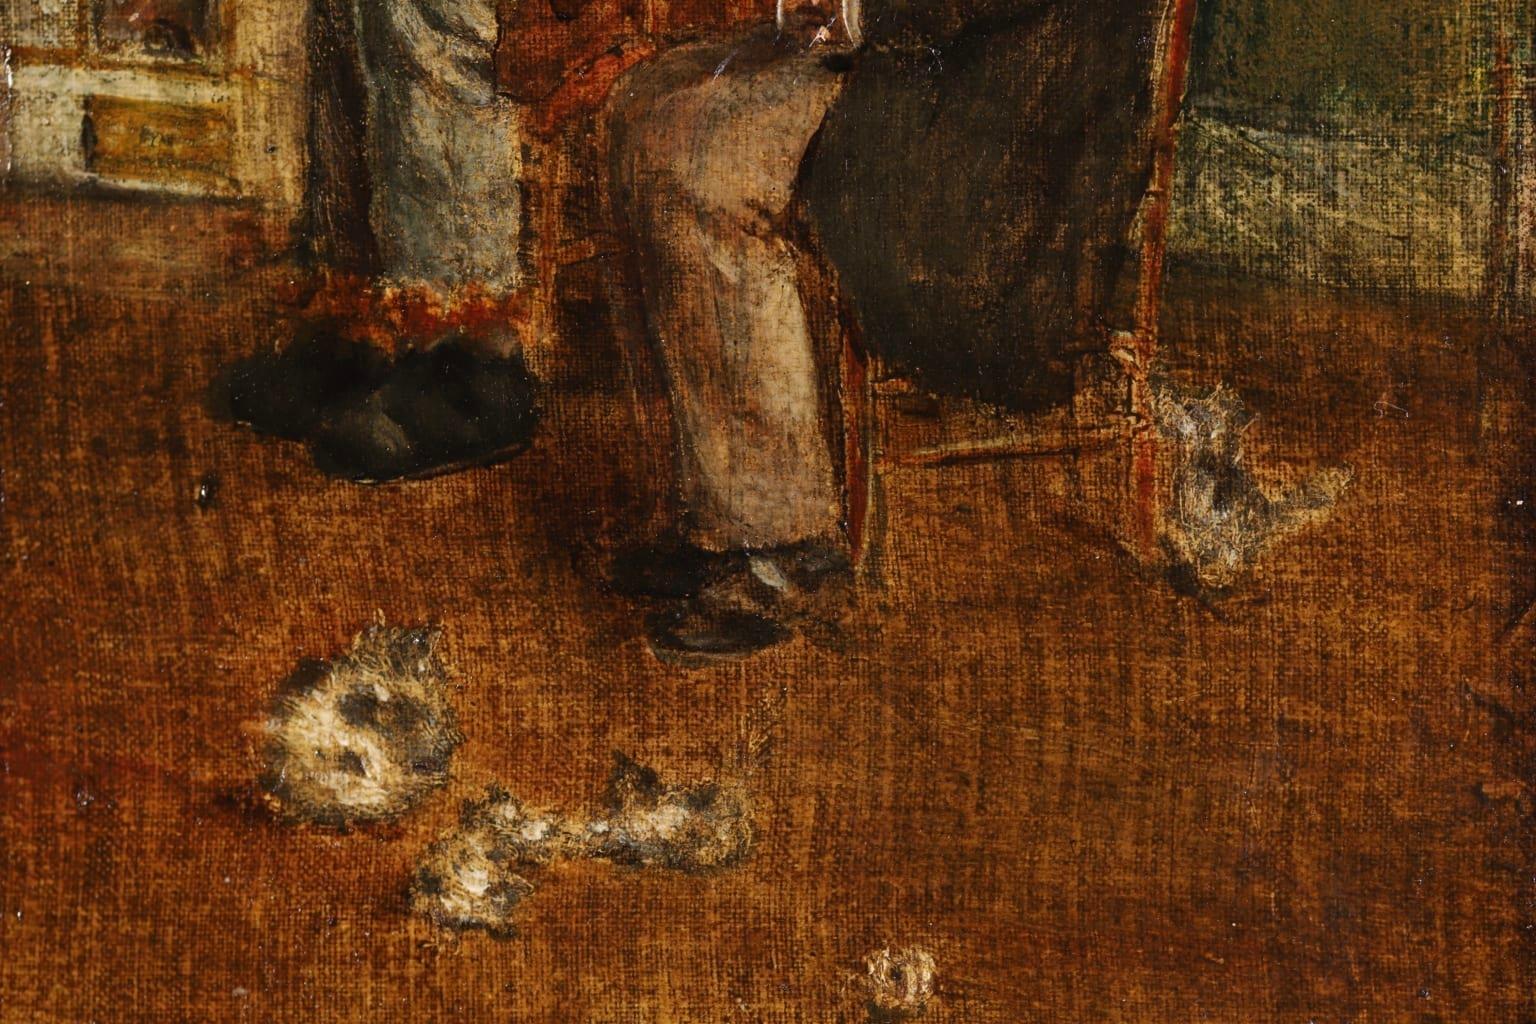 Une merveilleuse huile sur panneau du peintre impressionniste français Jean-Francois Raffaelli représentant deux vieux hommes assis dans un intérieur. L'un lit son journal pendant que l'autre fait la sieste et il y a plusieurs chatons sur le sol.